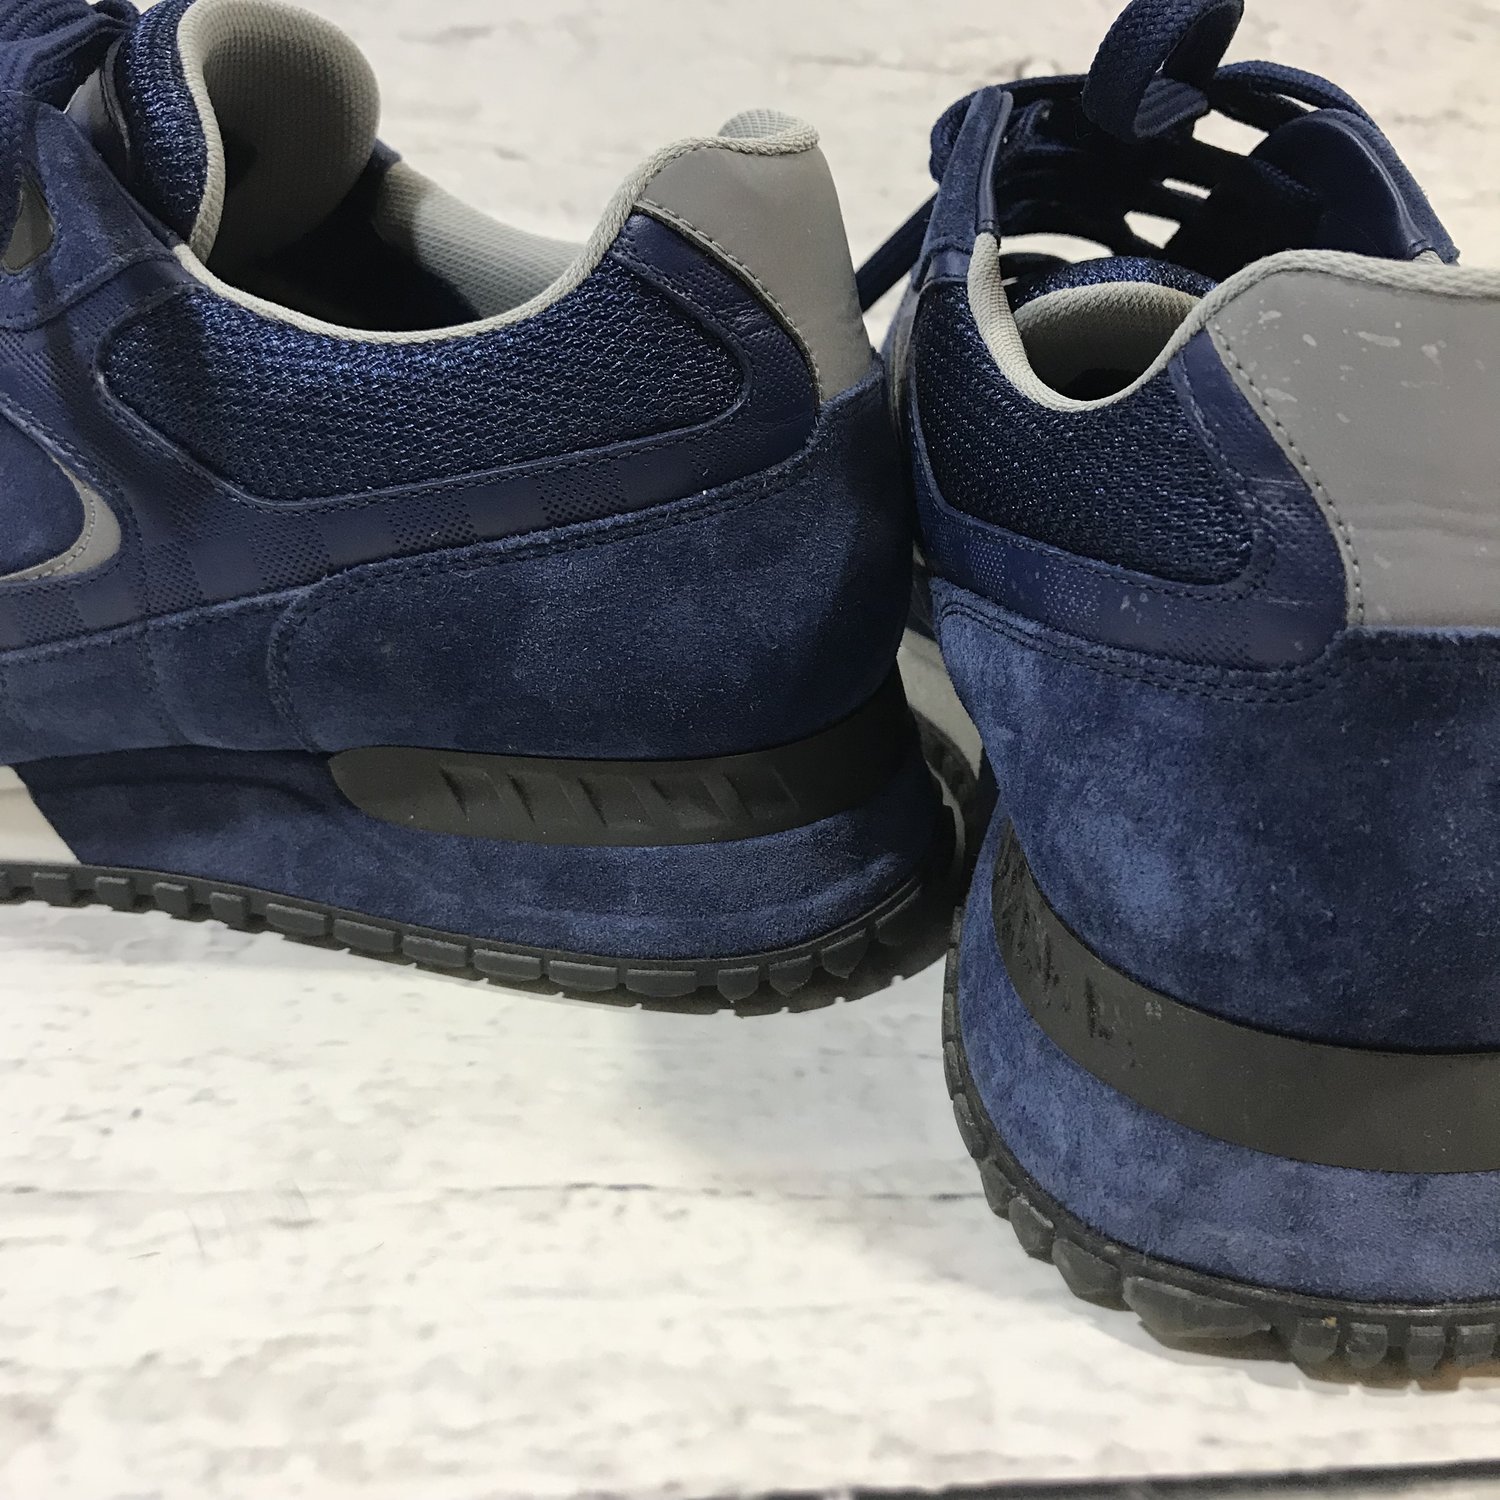 WMNS) LOUIS VUITTON Run Away Calfskin Sneakers Blue 1A5C2X - KICKS